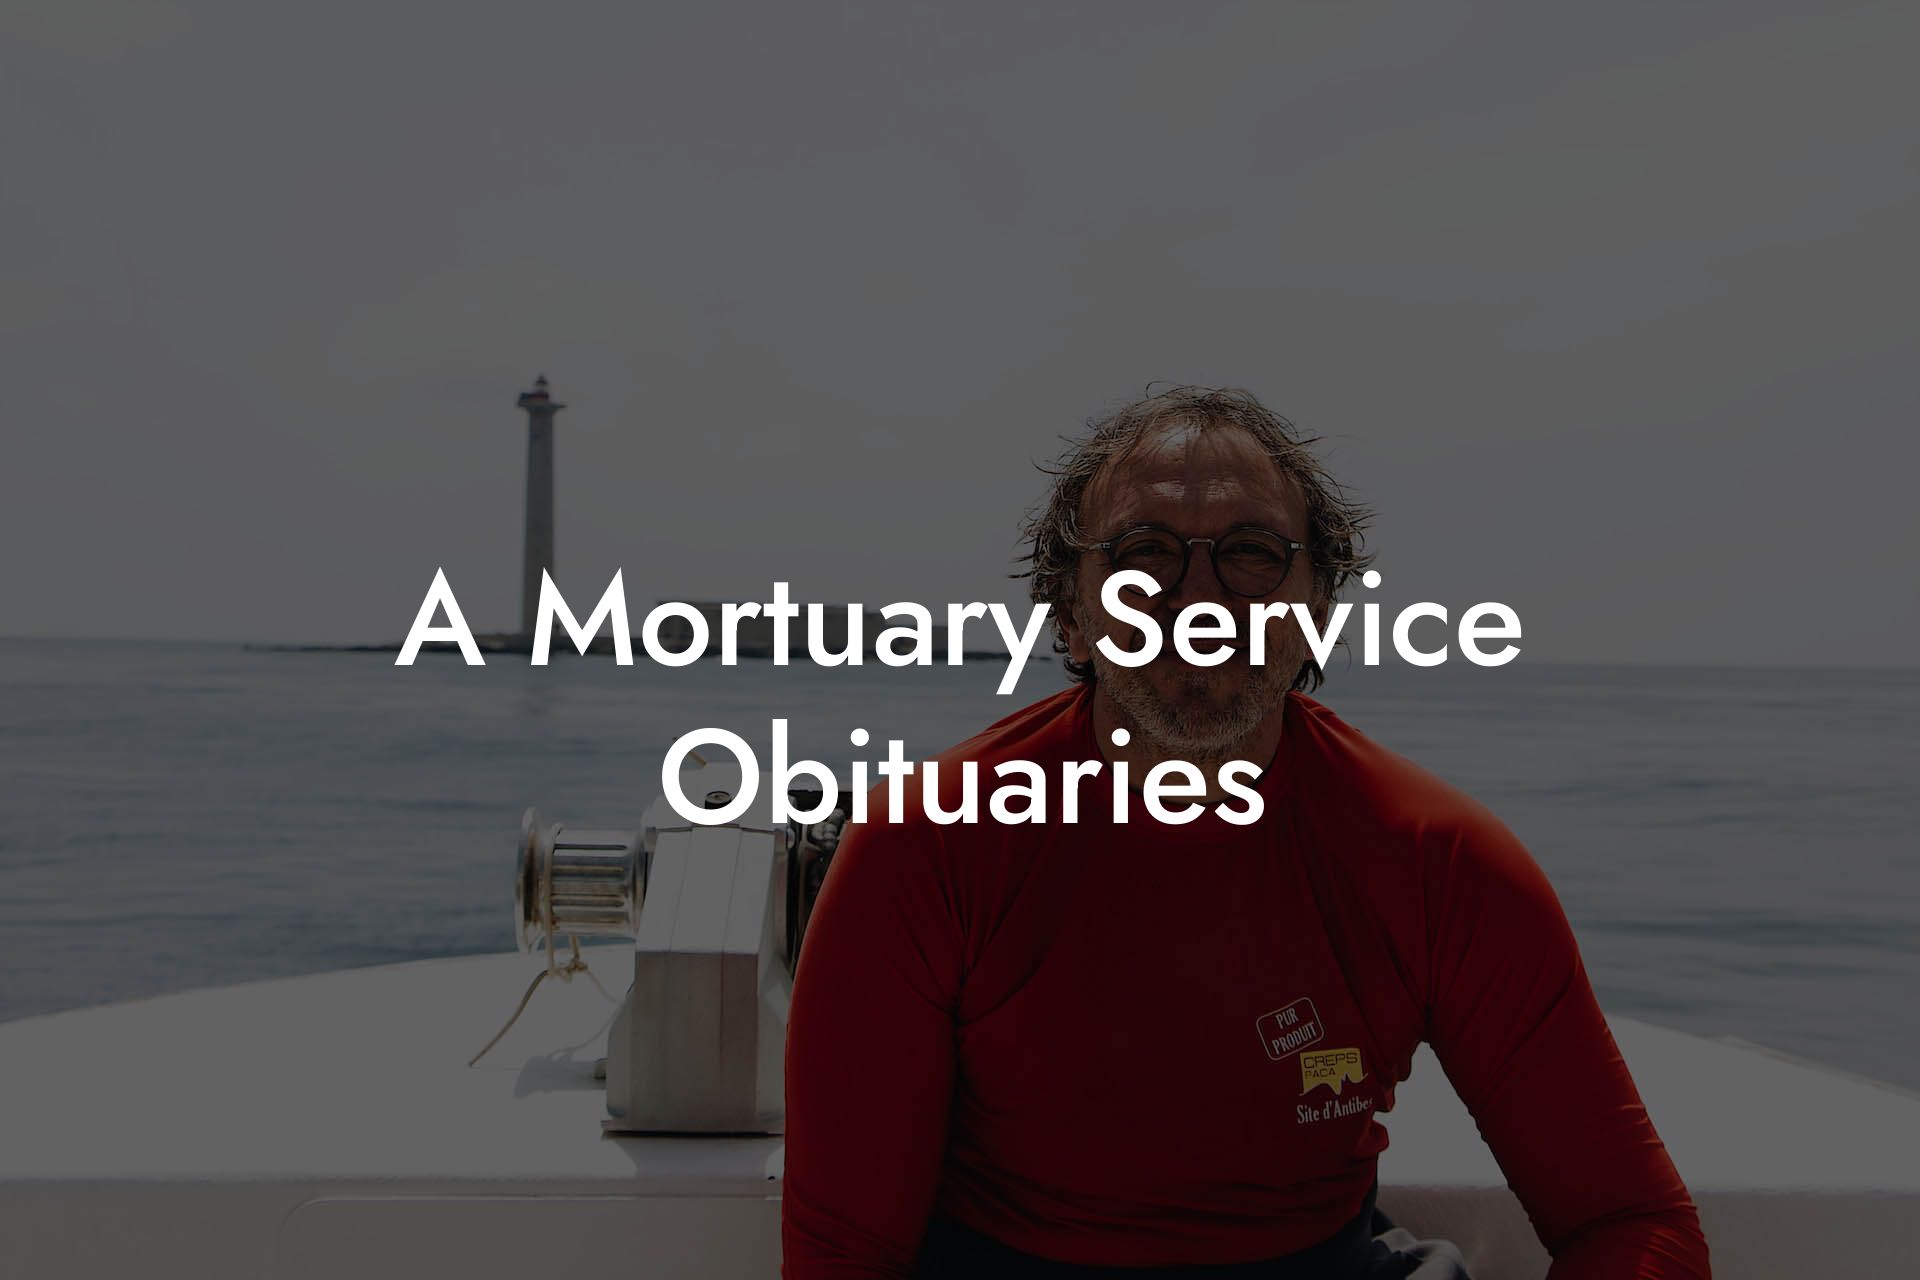 A Mortuary Service Obituaries